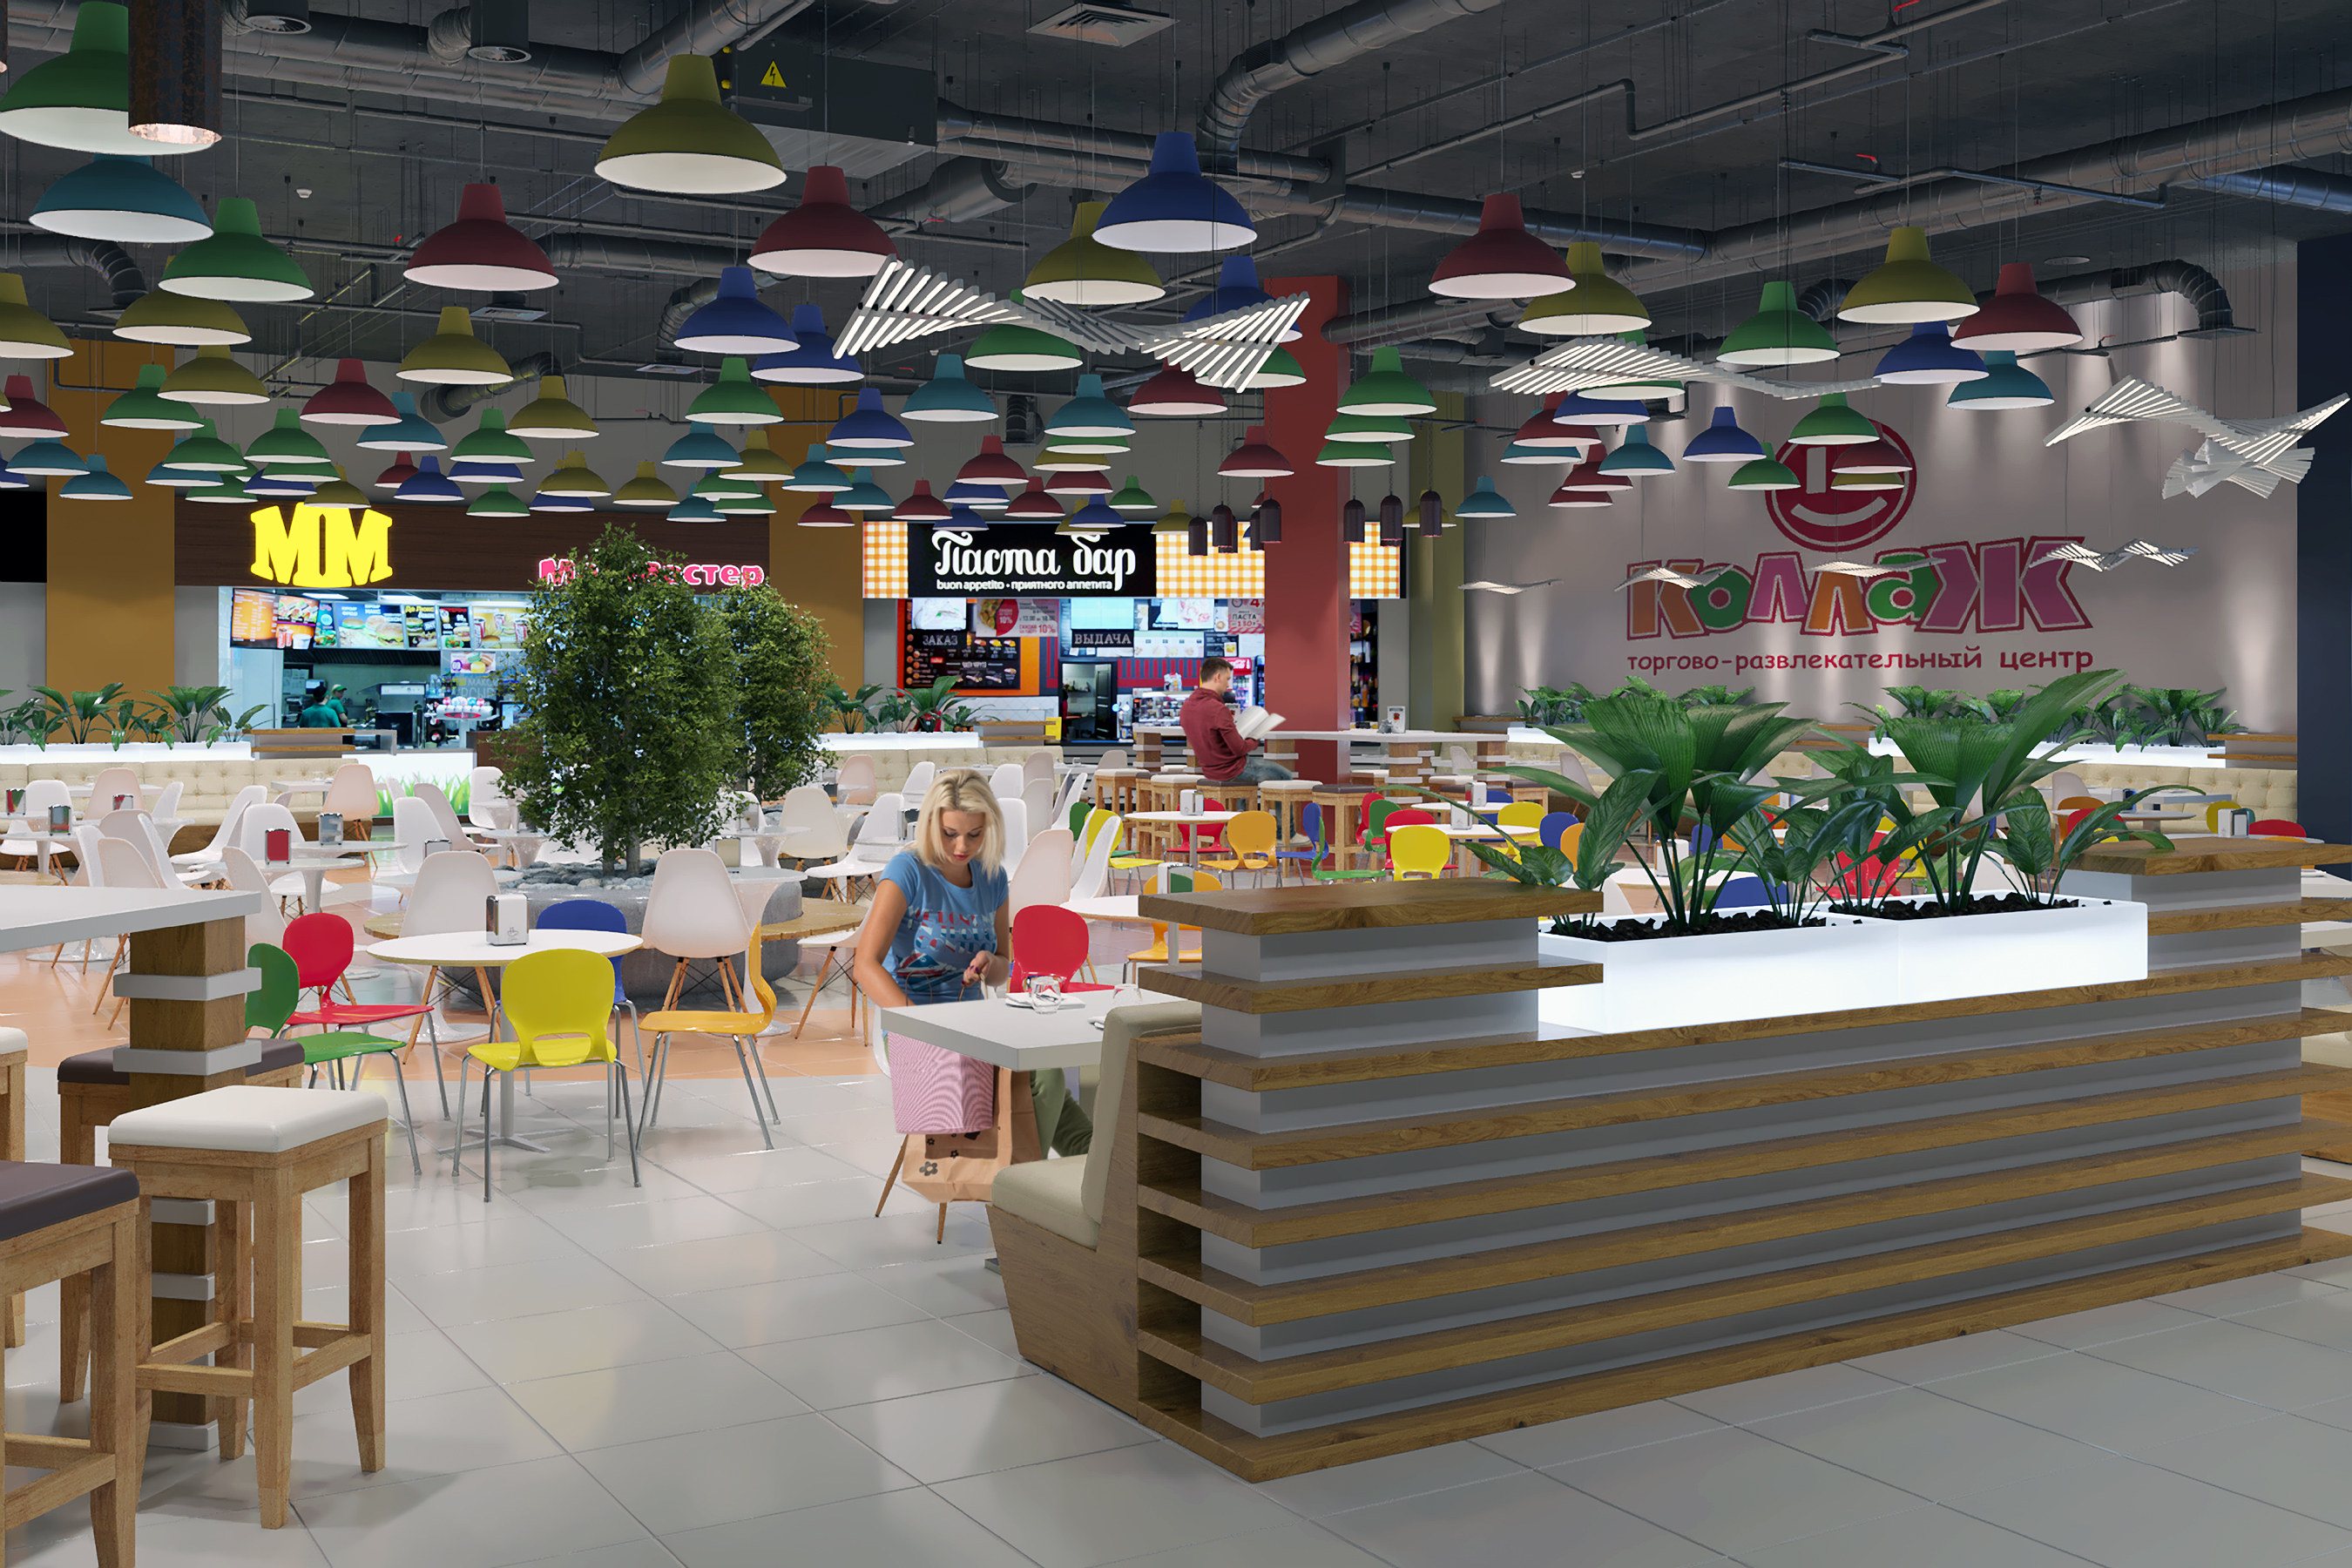 Foodcourt au centre commercial "Kollaz" dans 3d max corona render image